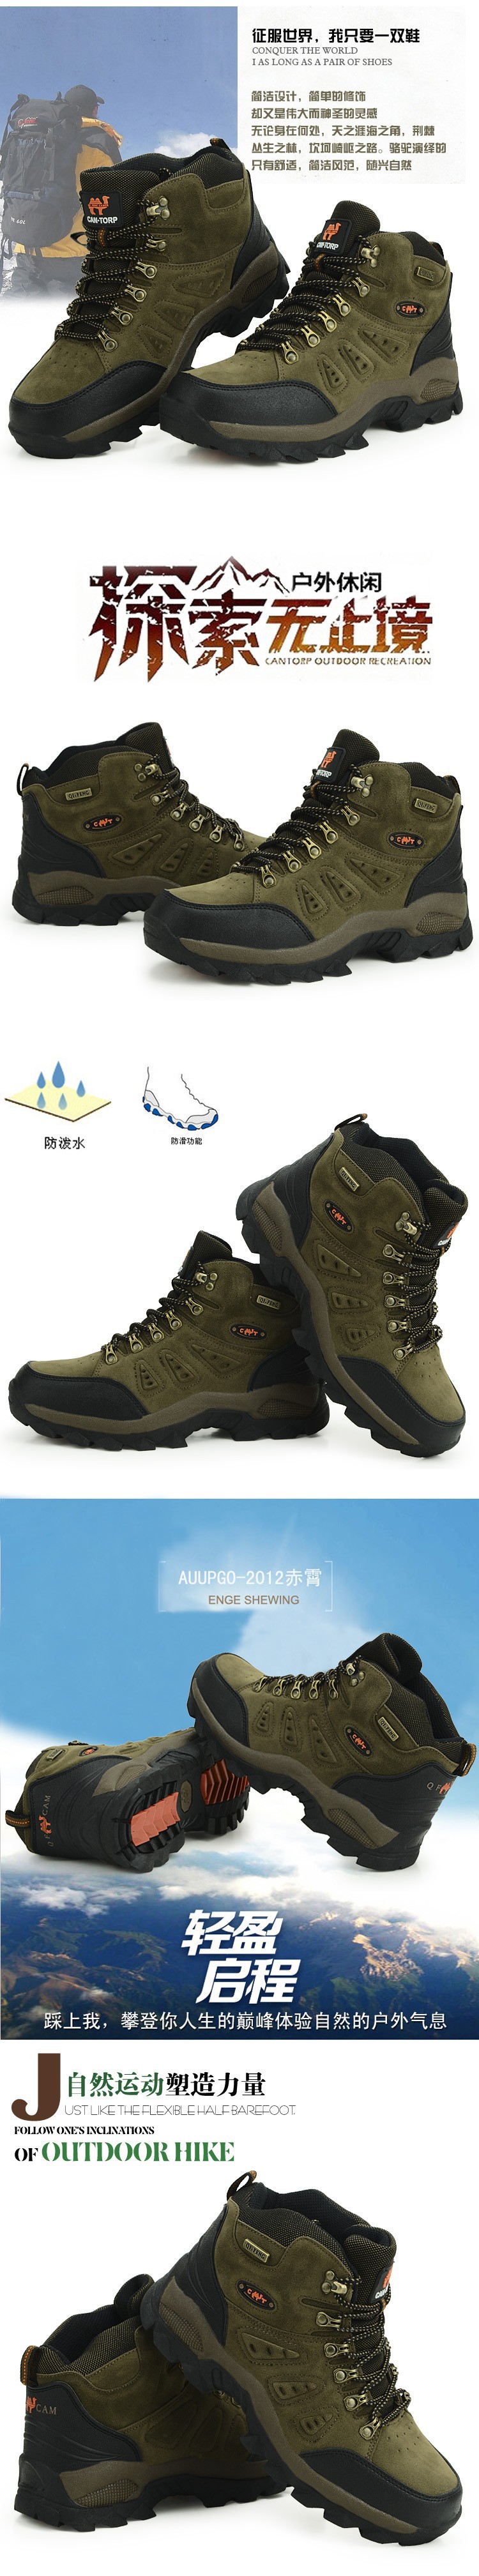 hiking shoes hs34d90 (2)